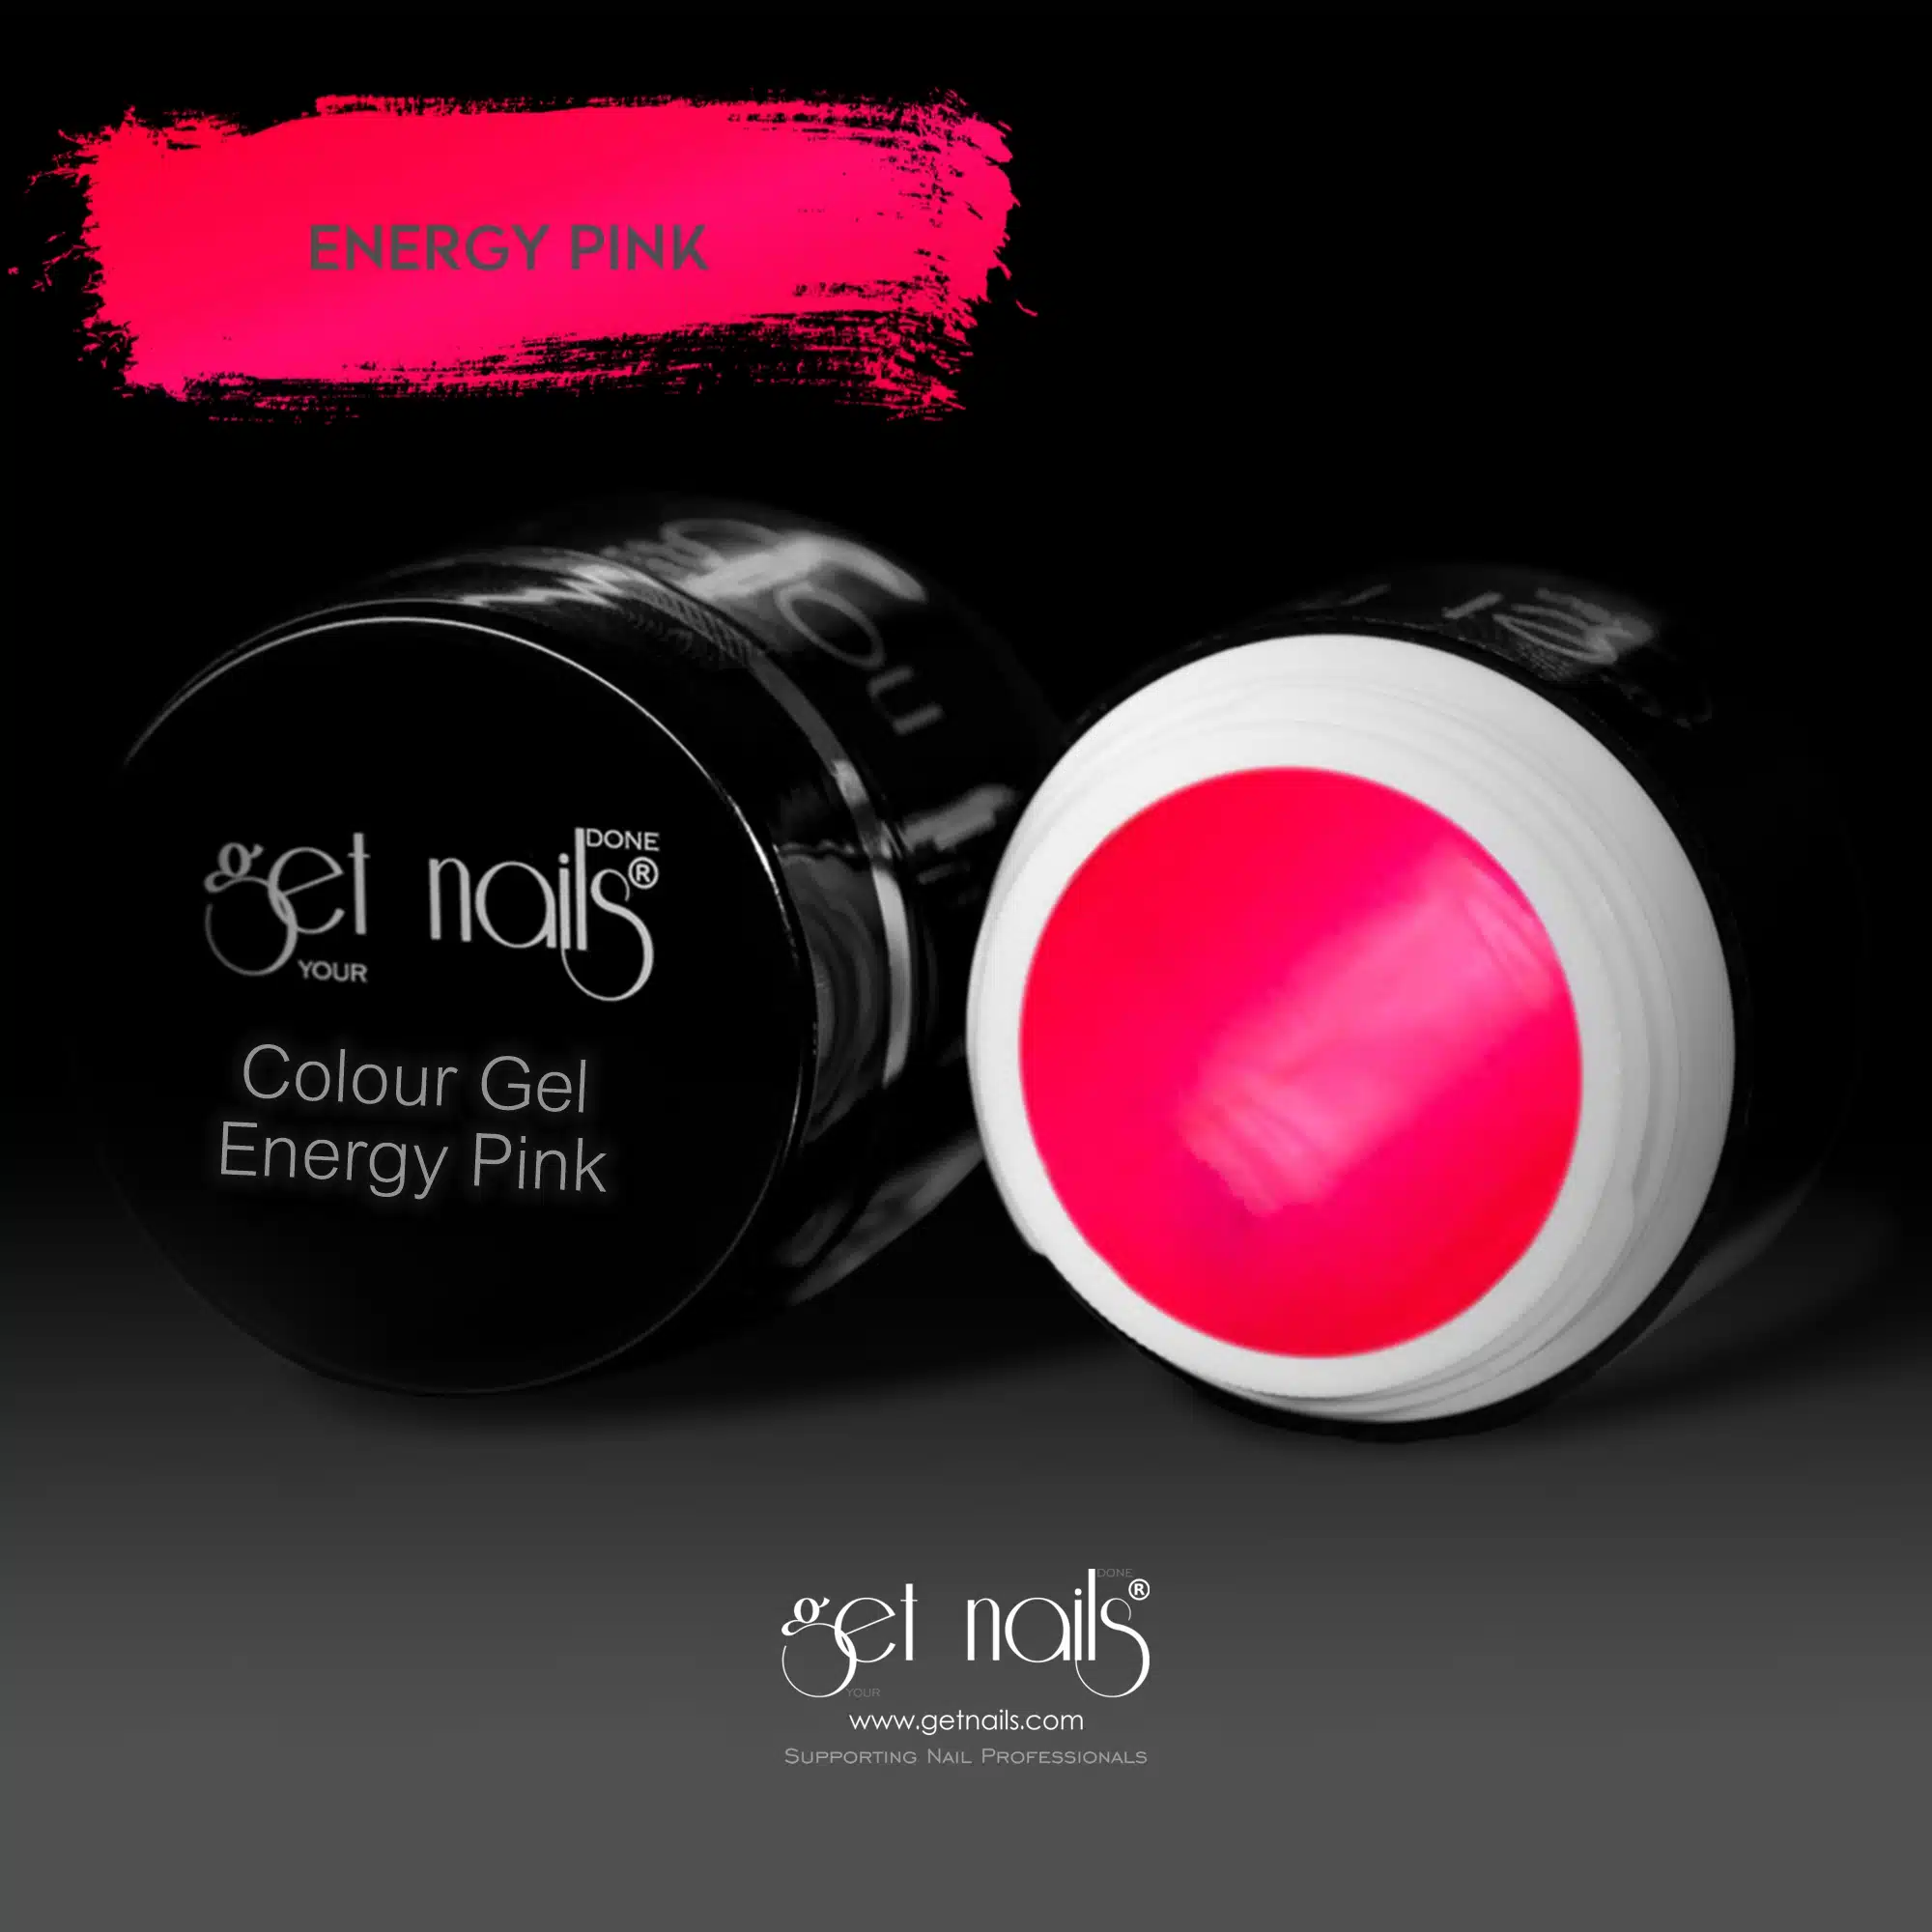 Get Nails Austria - Цветной гель Energy Pink 5g